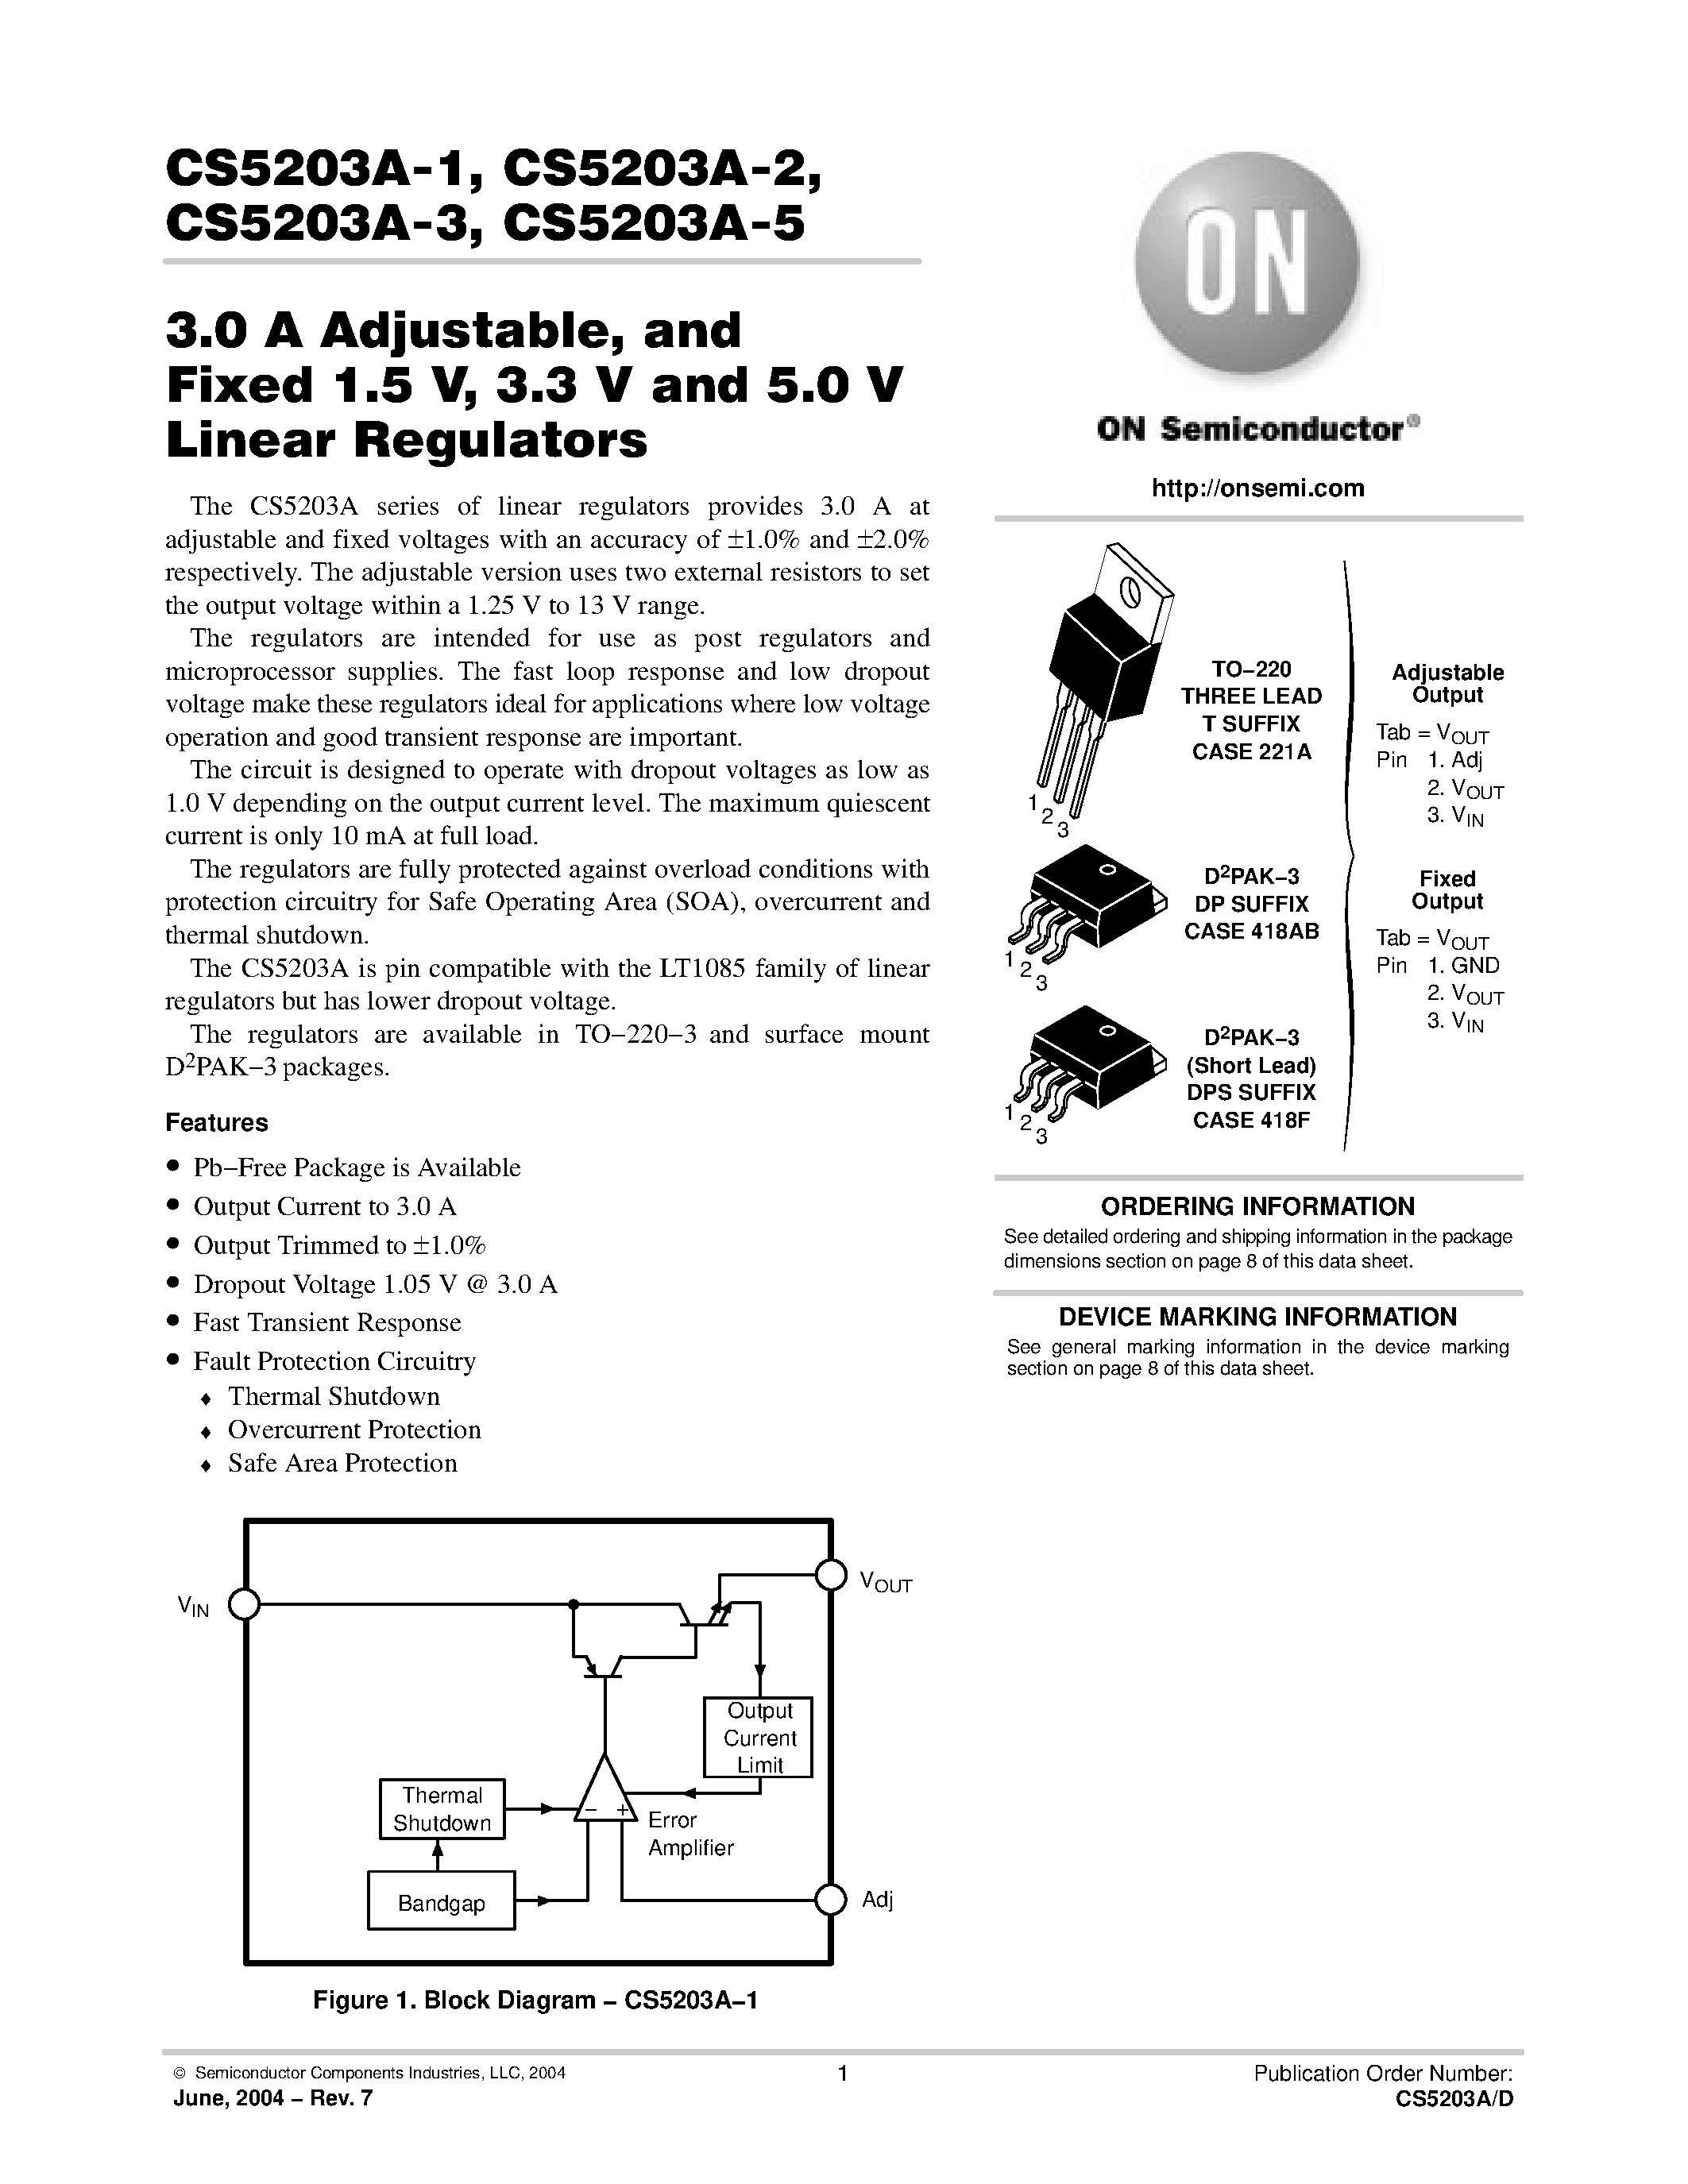 Даташит CS5203A-5 - 3.0 A Adjustable/ and Fixed 1.5 V/ 3.3 V and 5.0 V Linear Regulators страница 1